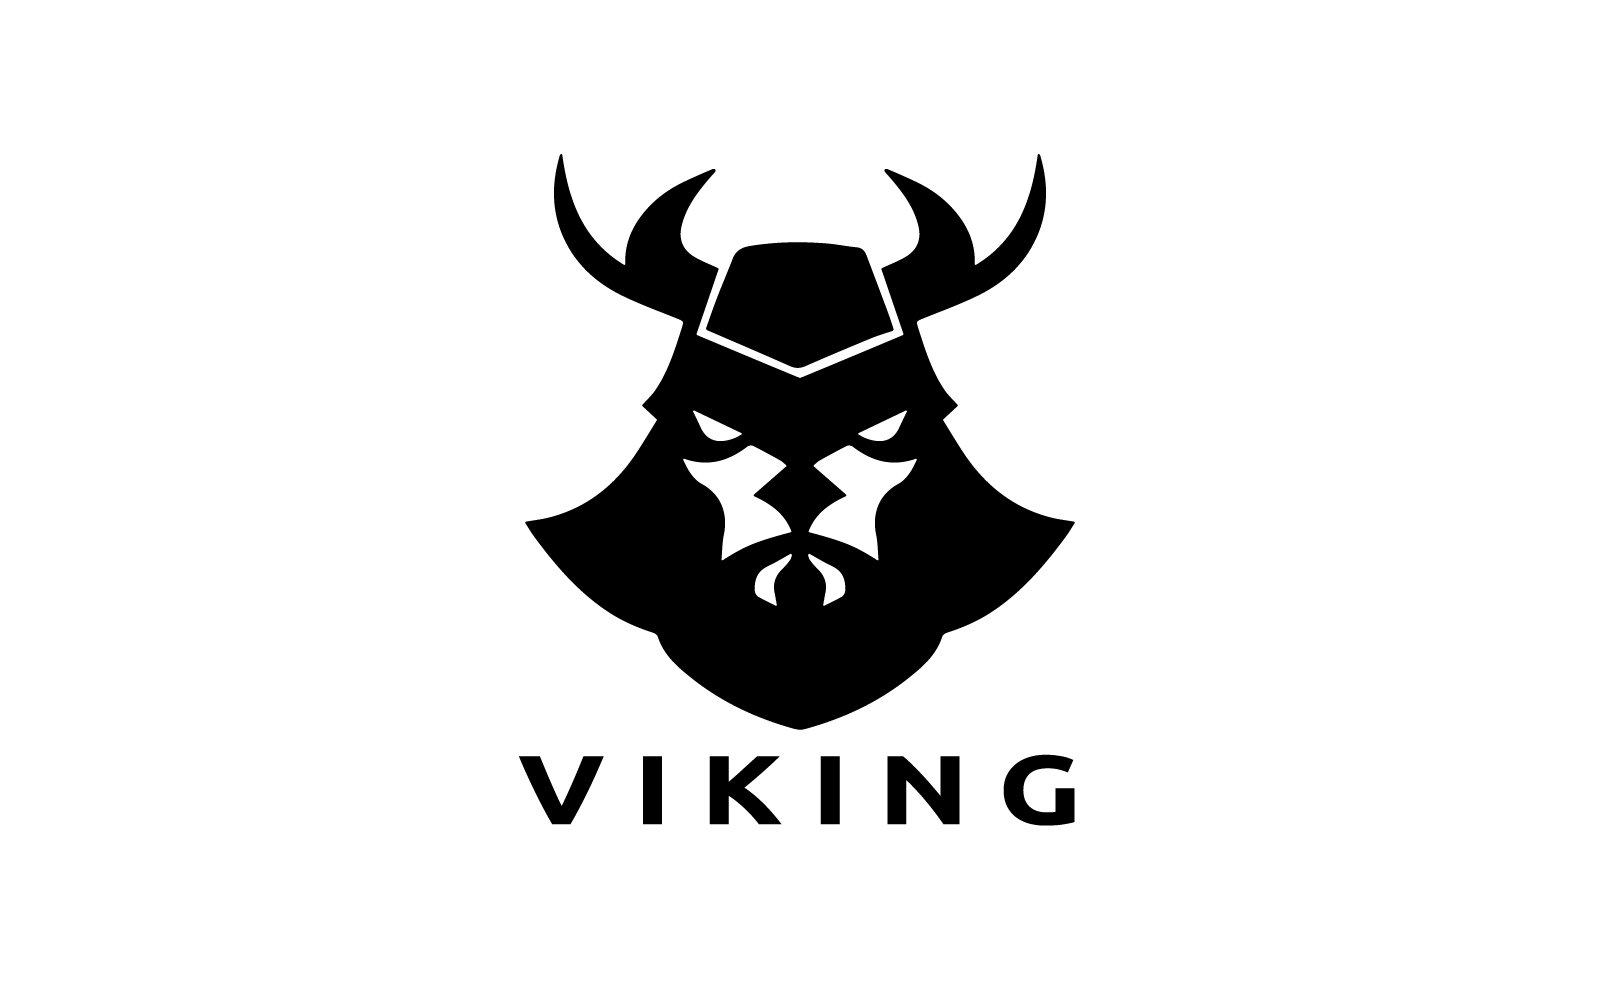 Viking Logo Design Template V14